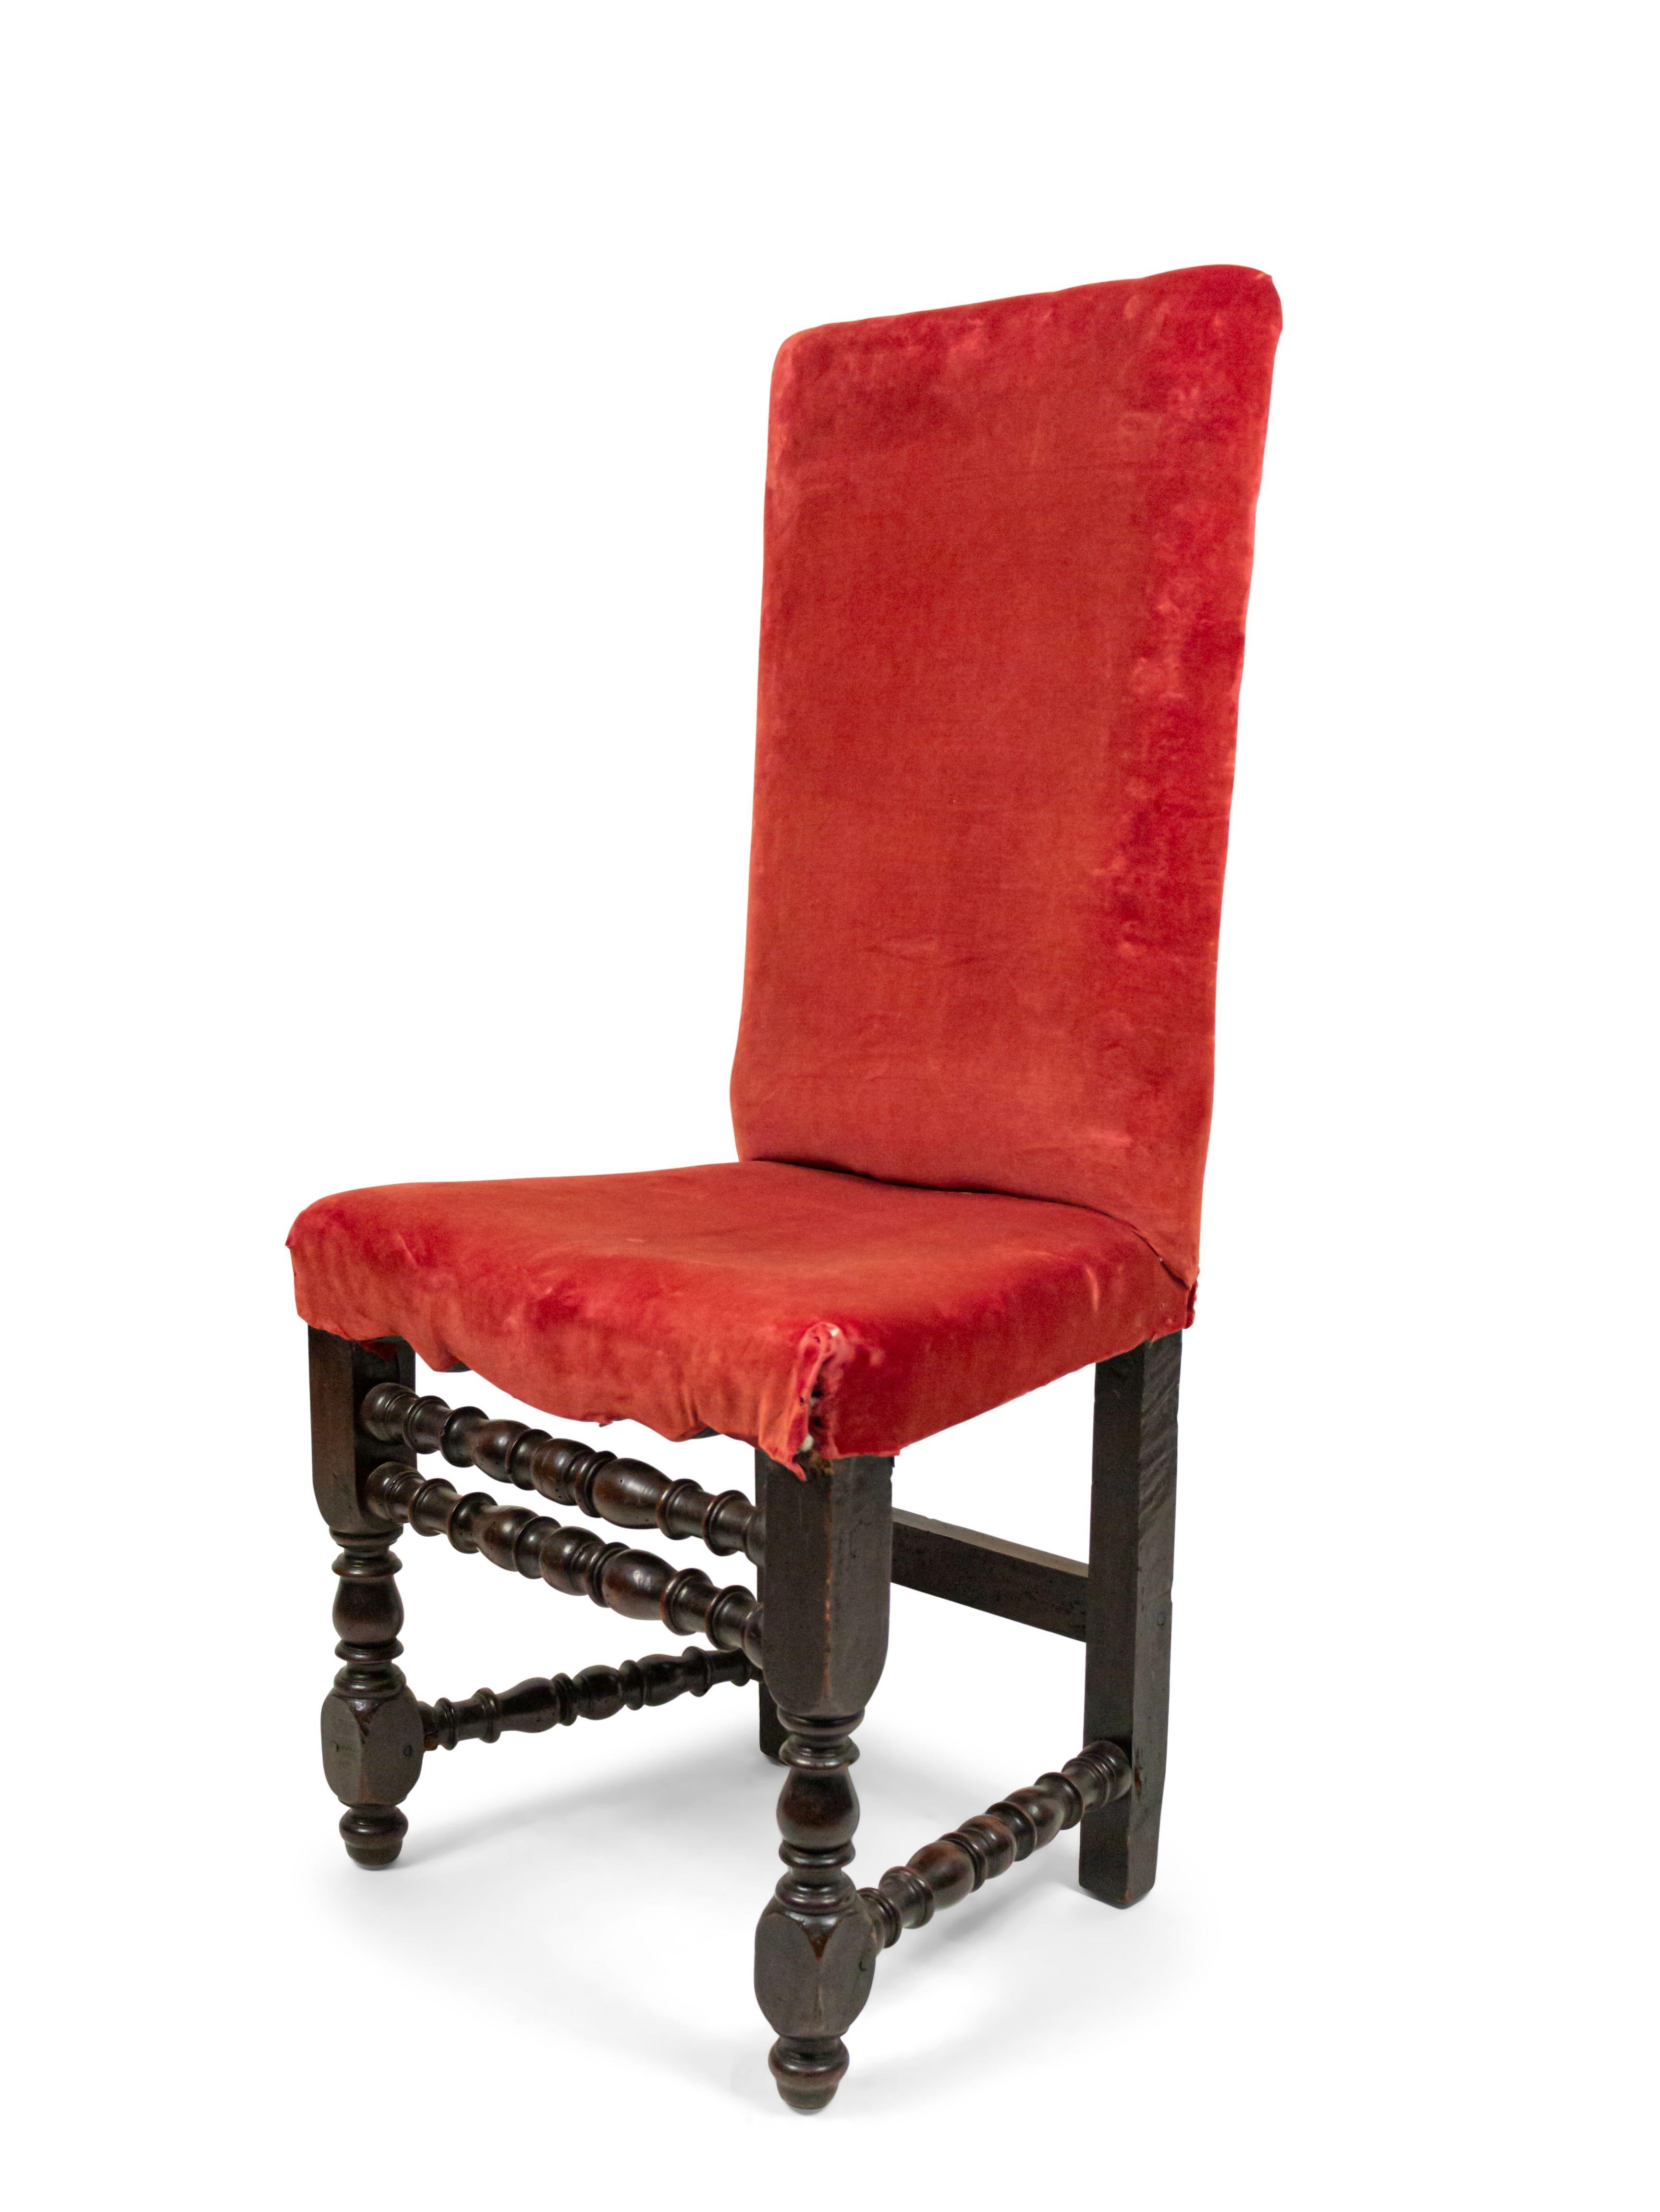 Ensemble de 4 chaises d'appoint Renaissance anglaise (XVIIe-XVIIIe siècle) à pieds joints en noyer, à double traverse avant et assise et dossier tapissés de velours rouge.